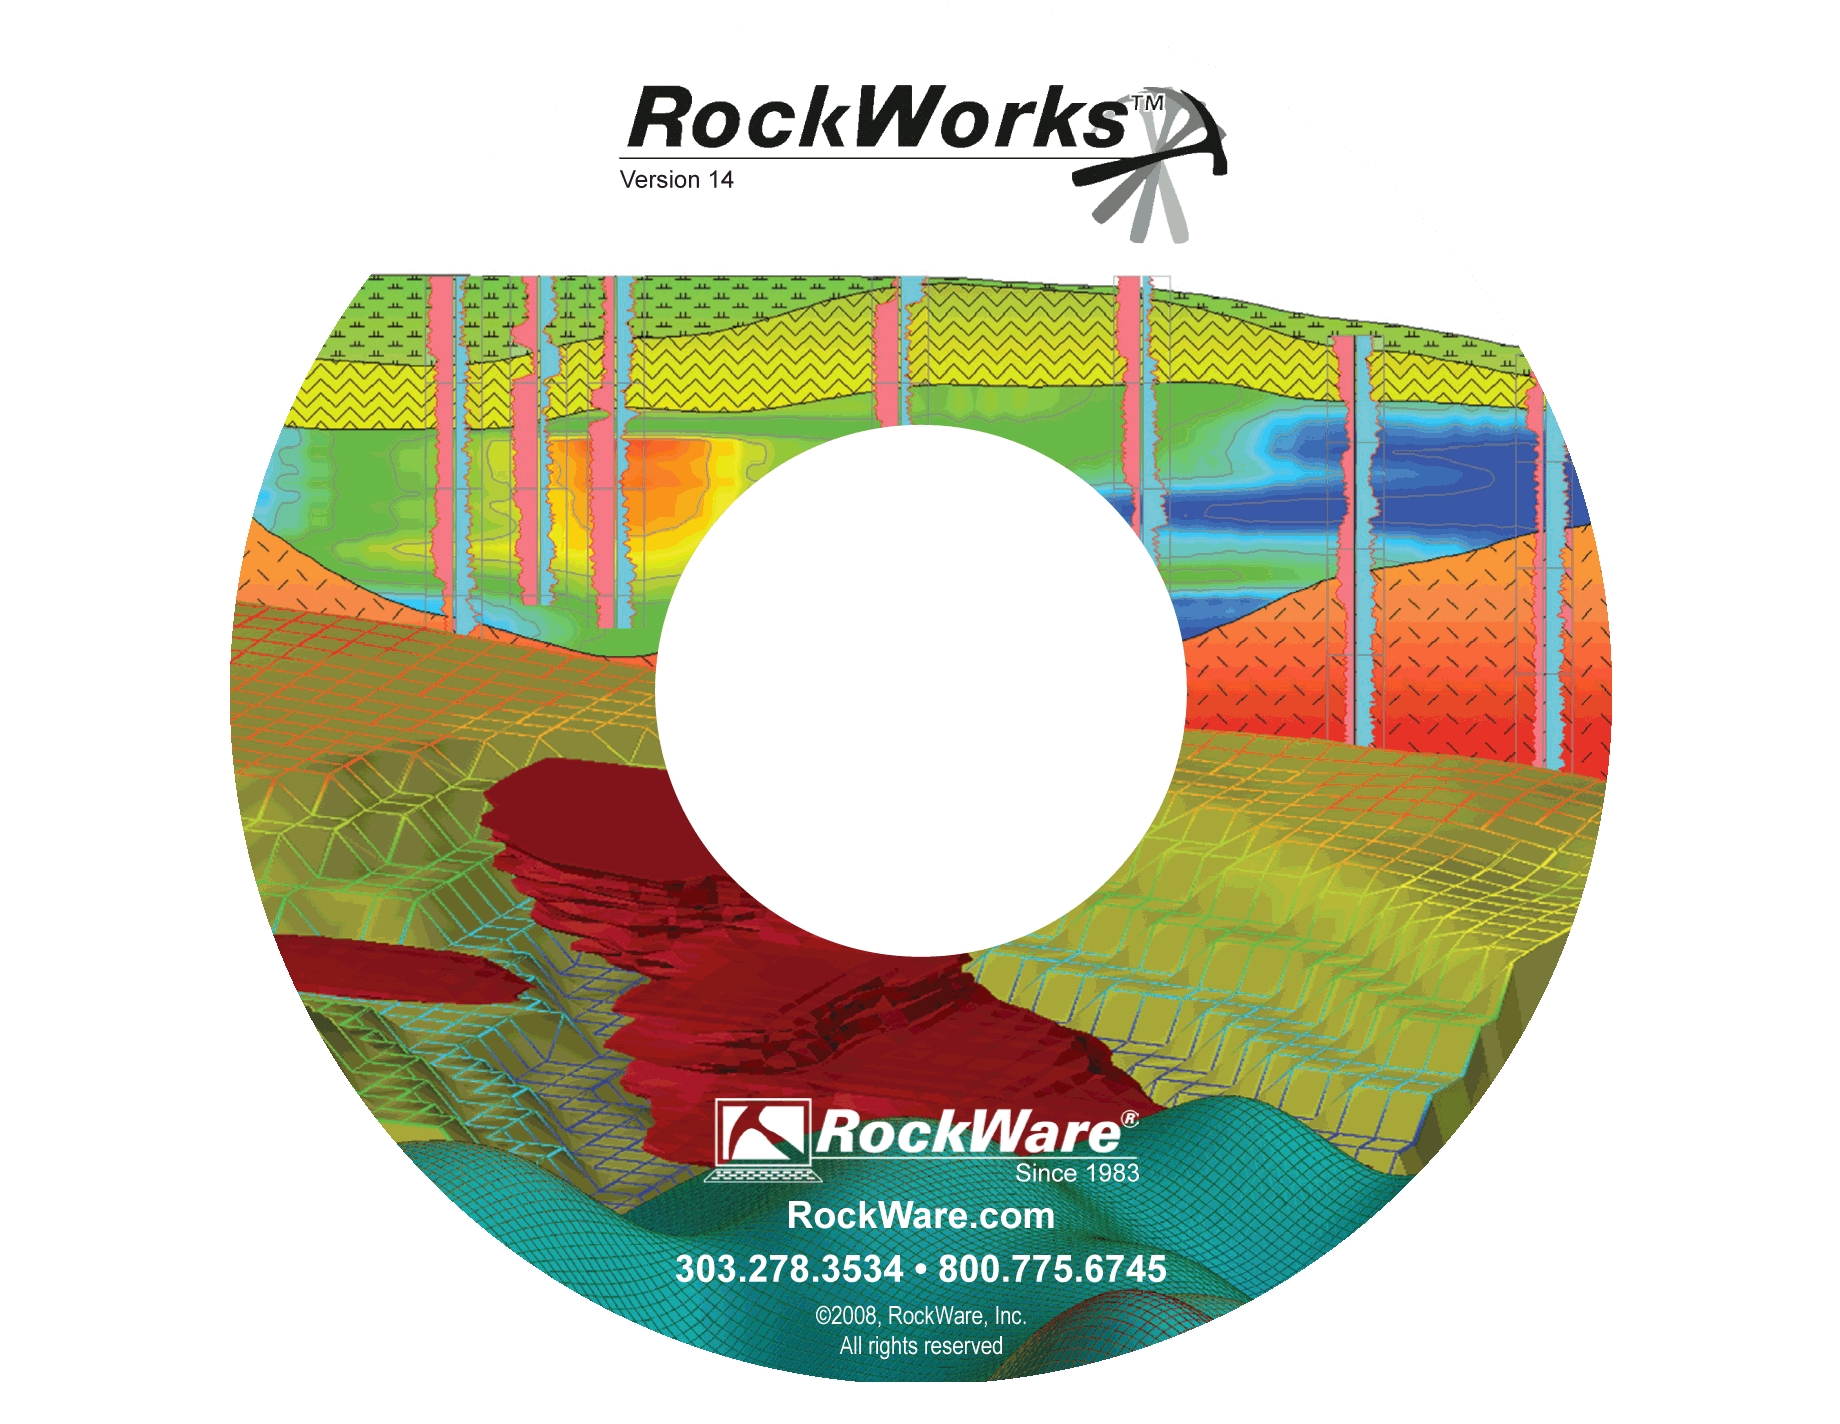 rockworks software